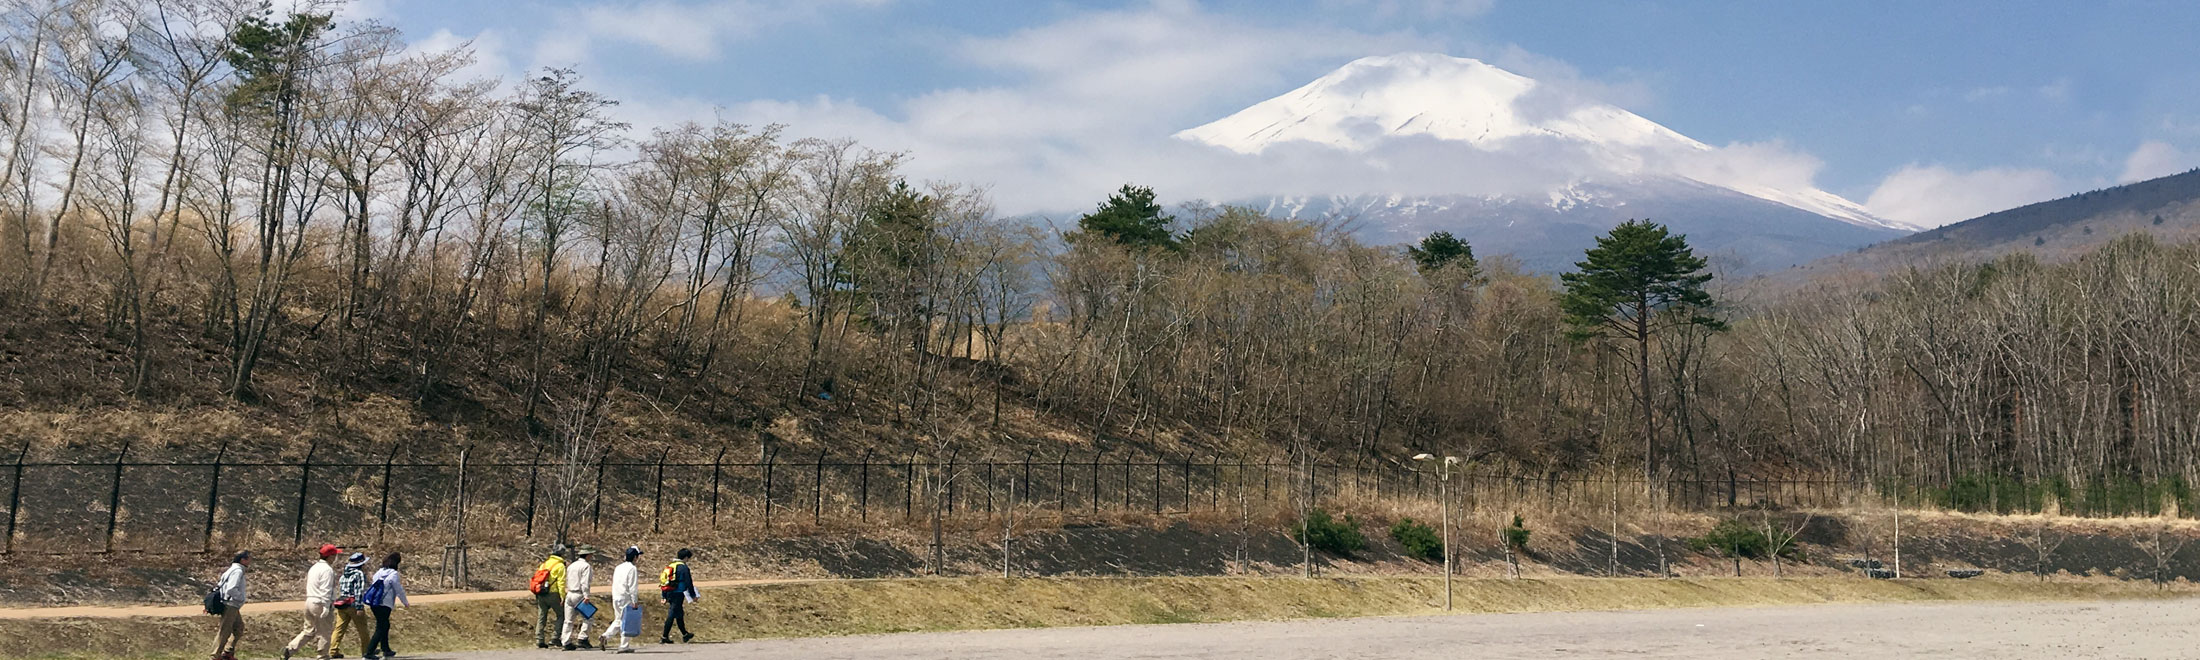 静岡県小山町 須走・富士山眺望コース